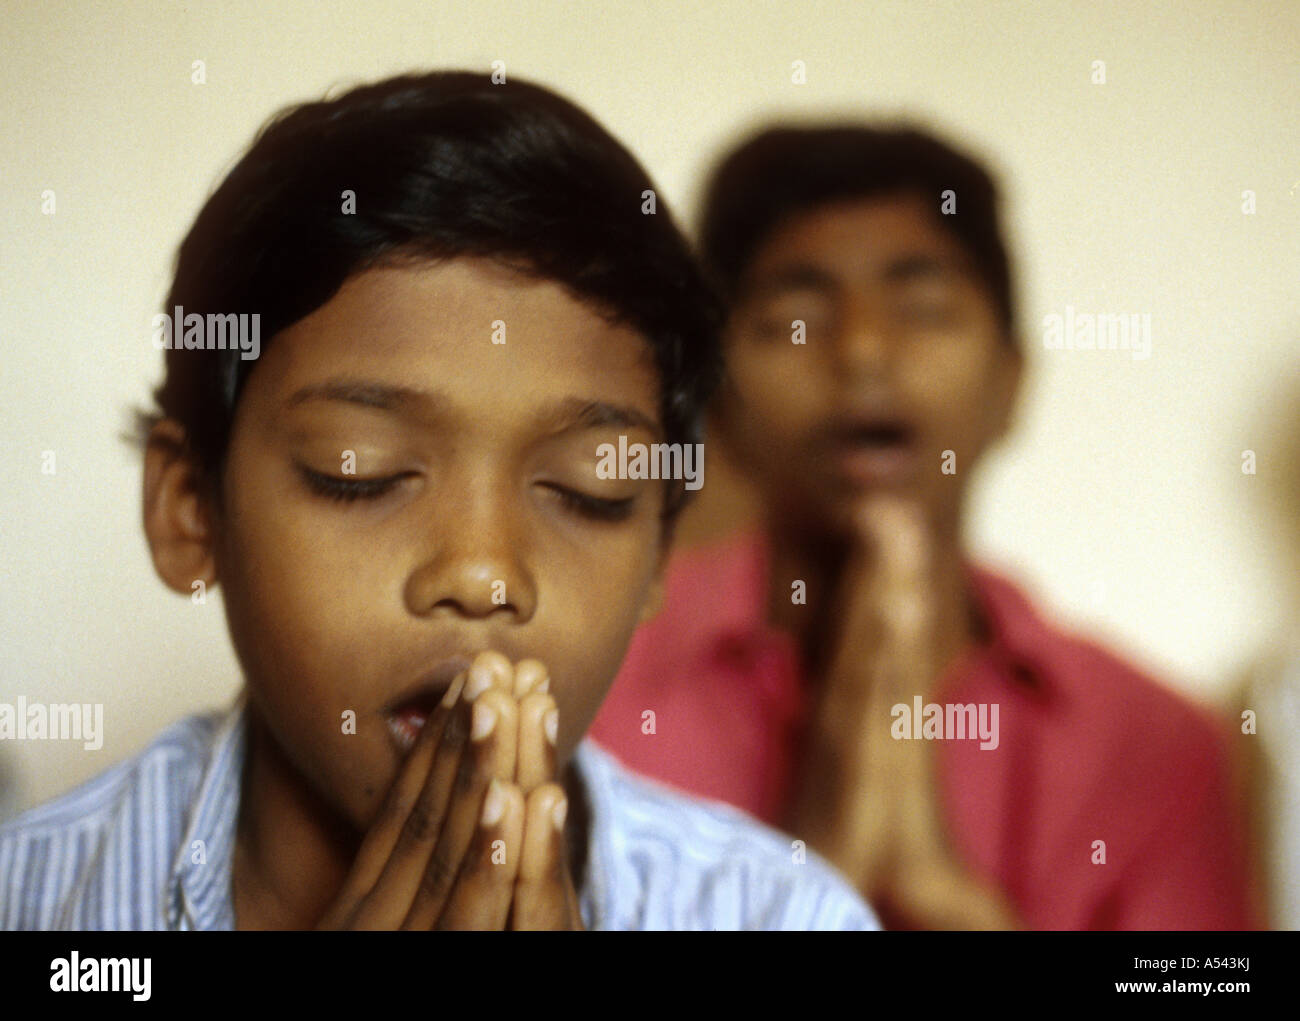 Painet ha2577 5421 Indien Freligion christlichen jungen Karimoor Hause Kerala Land entwickeln Nation wirtschaftlich zu beten Stockfoto